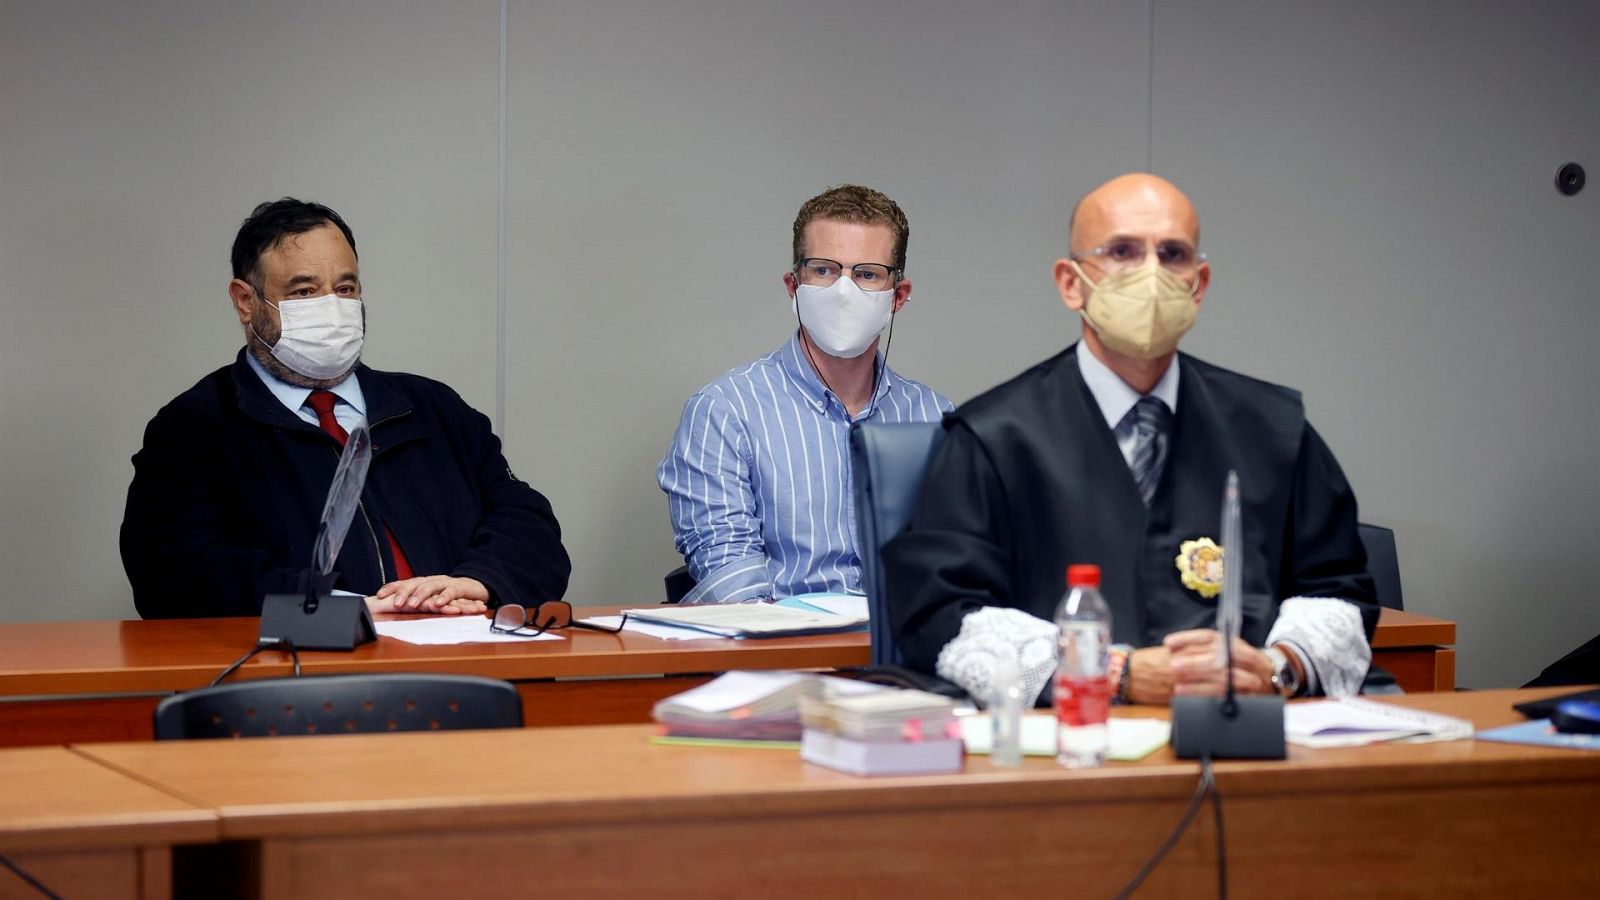 El padre acusado de asesinar a sus hijos en Godella se ha declarado inocente ante el juez